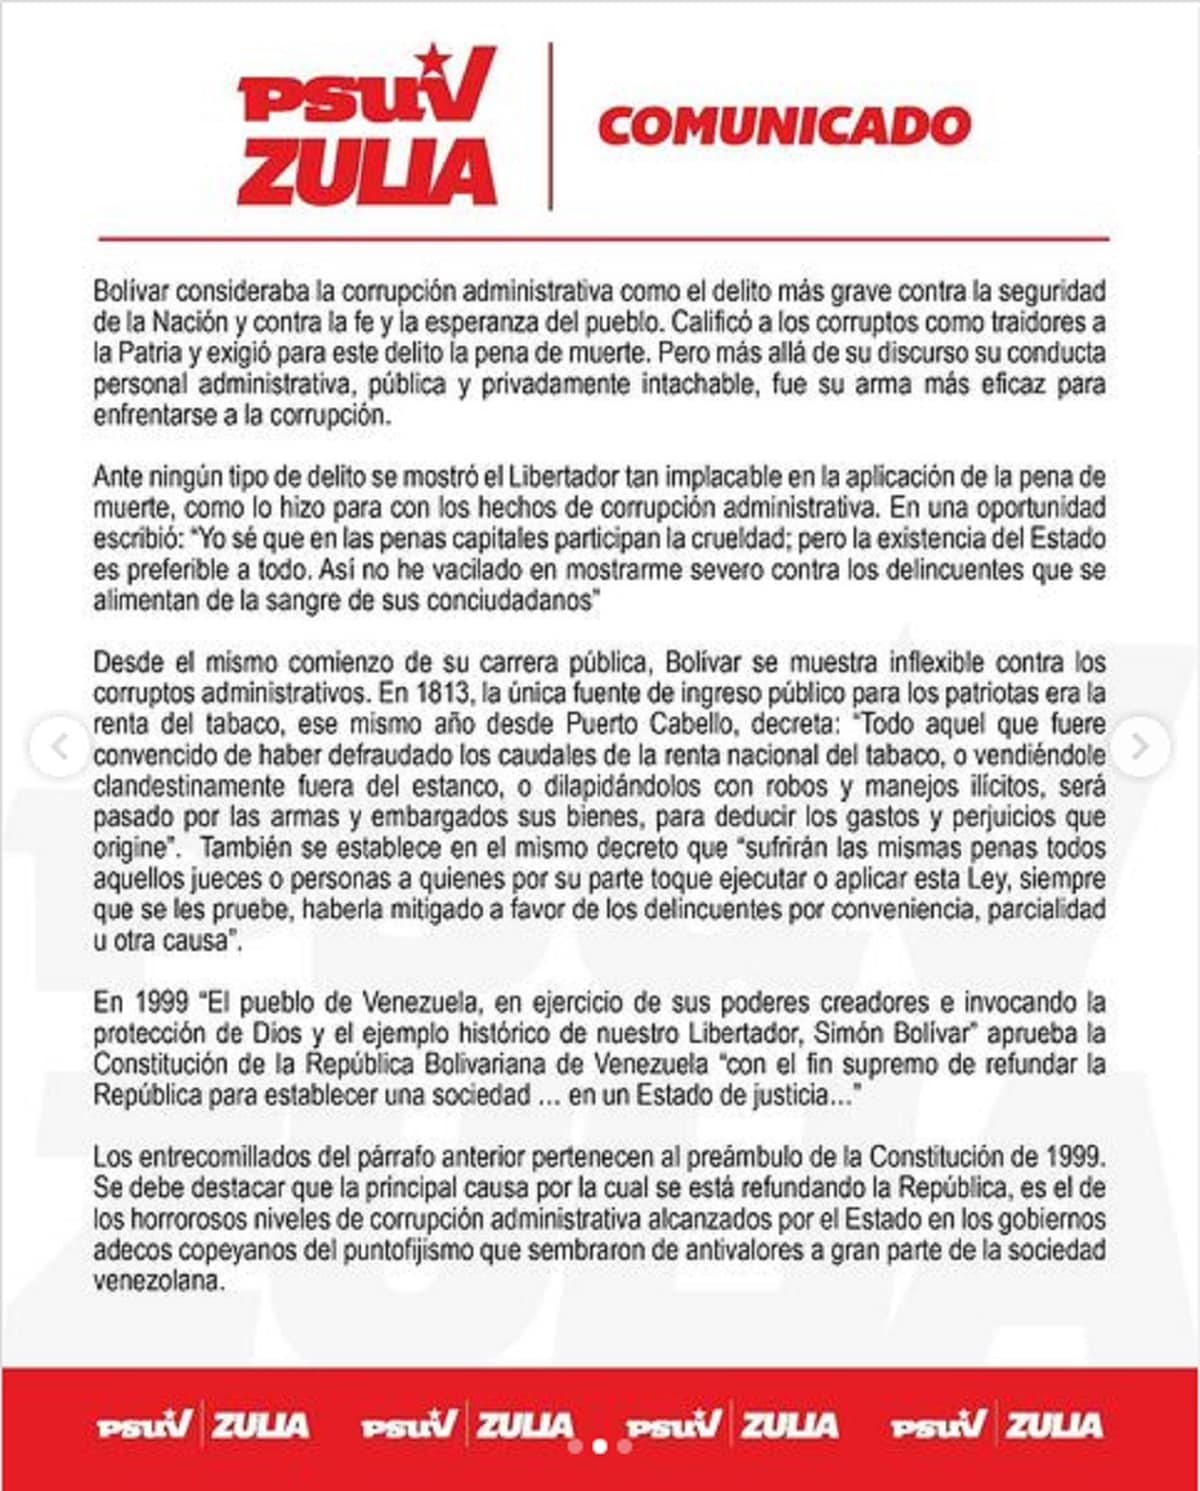 PSUV Zulia acciones anticorrupción 